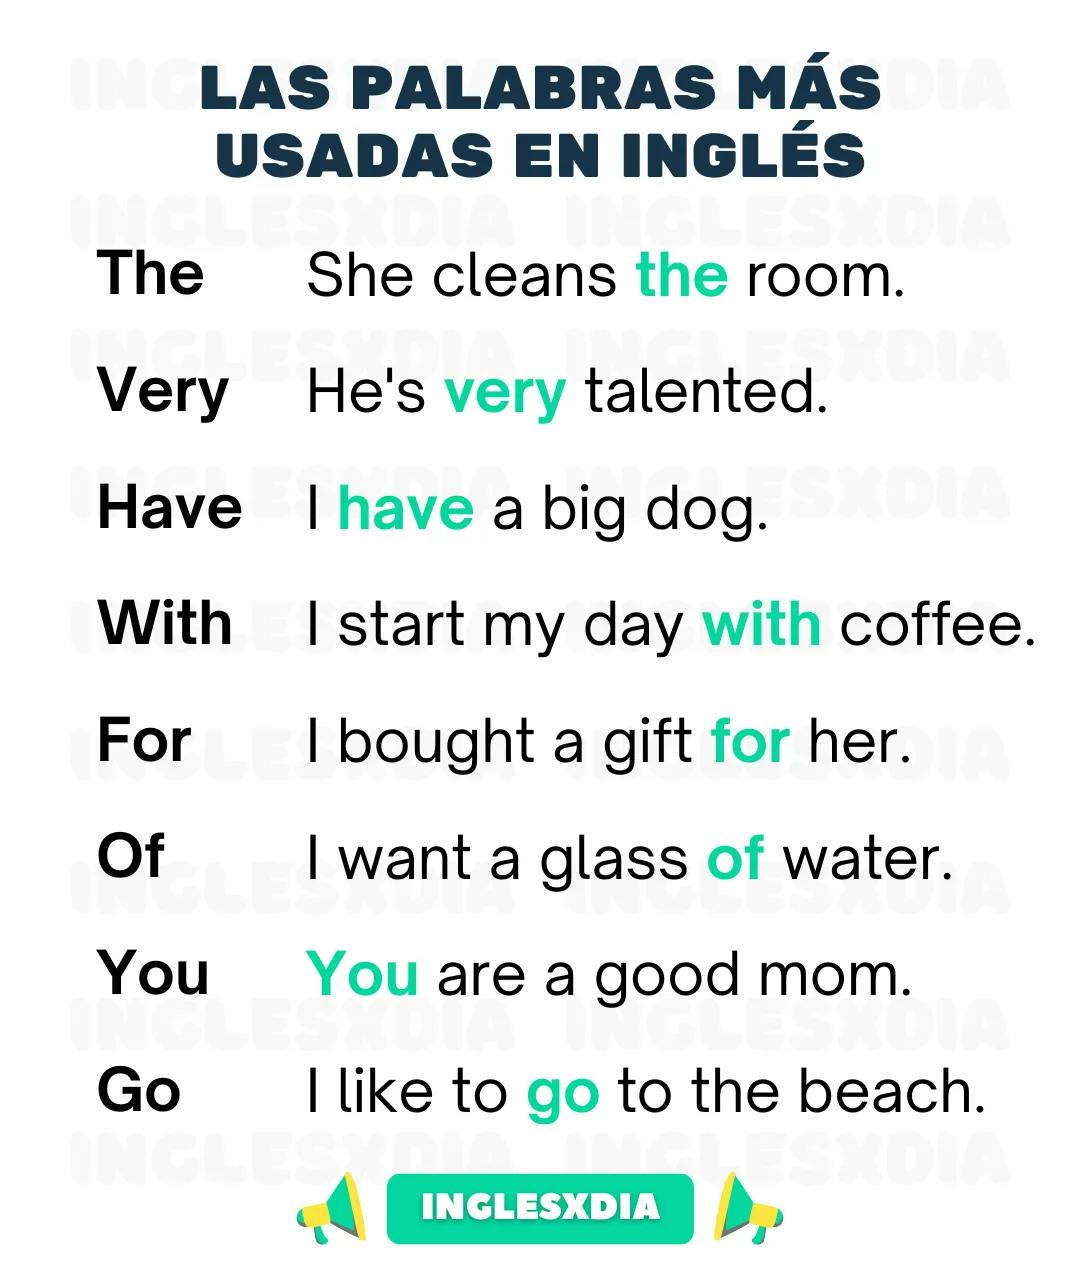 Las palabras más usadas en inglés